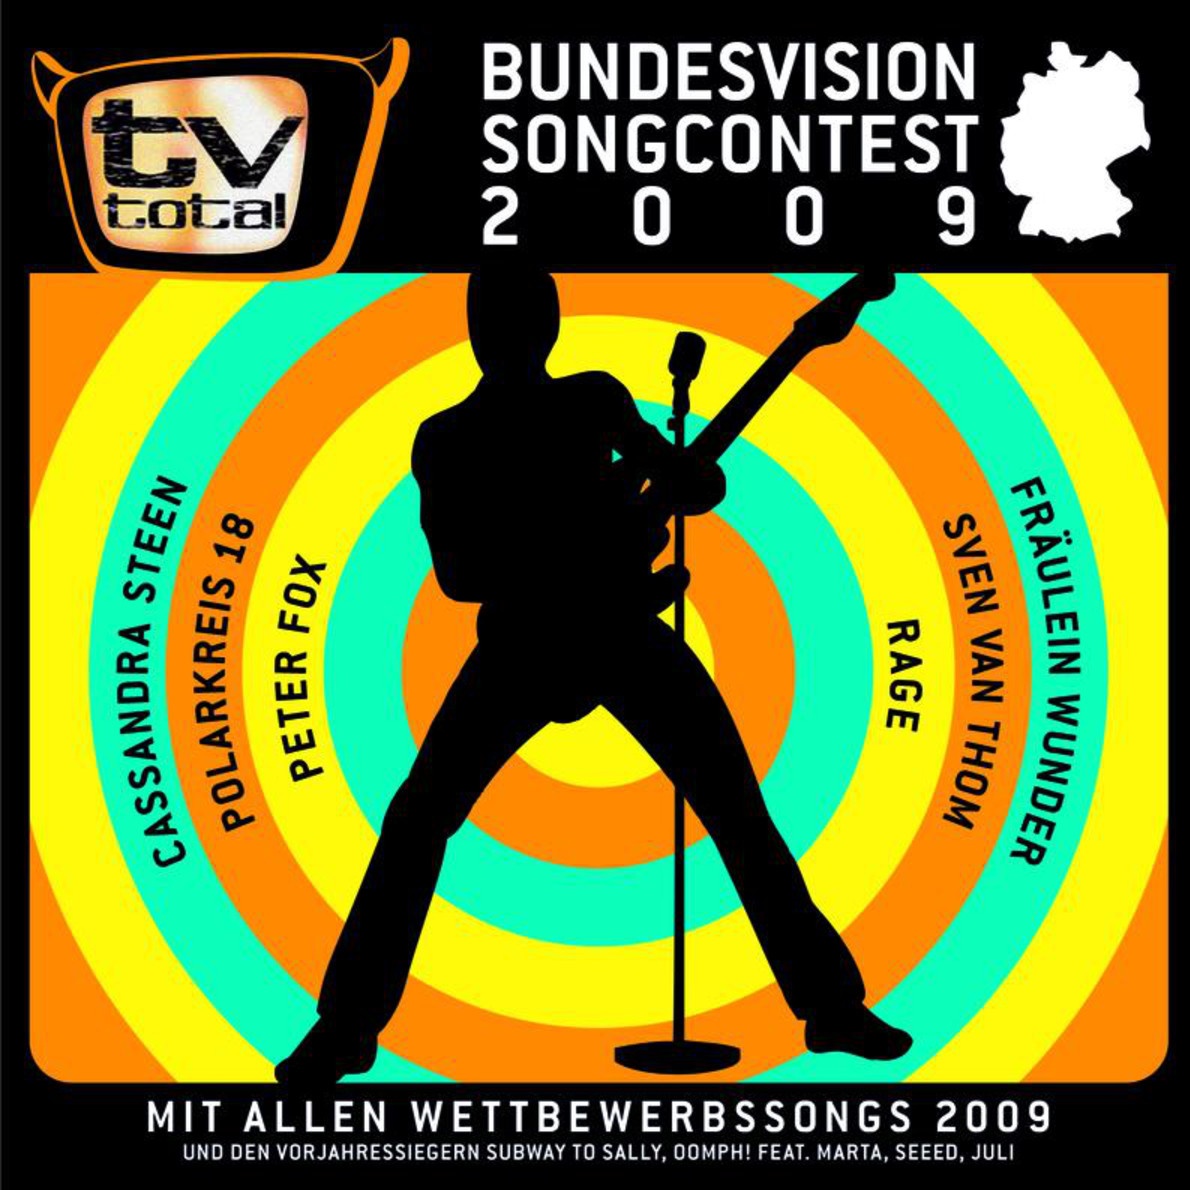 Geile Zeit (Bonus, Sieger 2005)